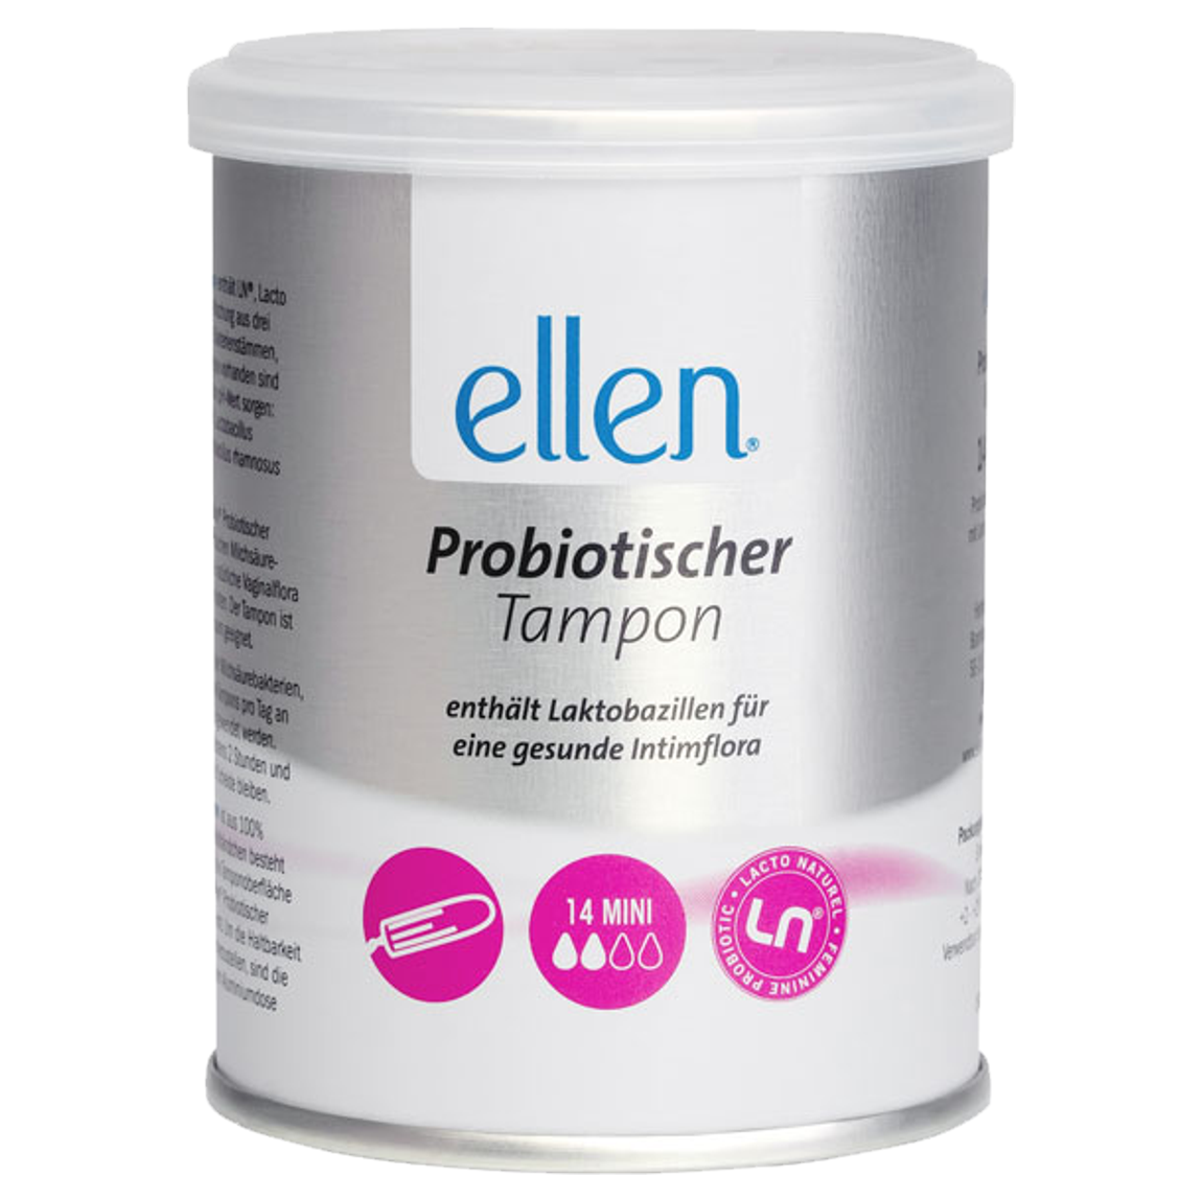 Ellen_Probiotic_Tampons_Mini_online_kaufen